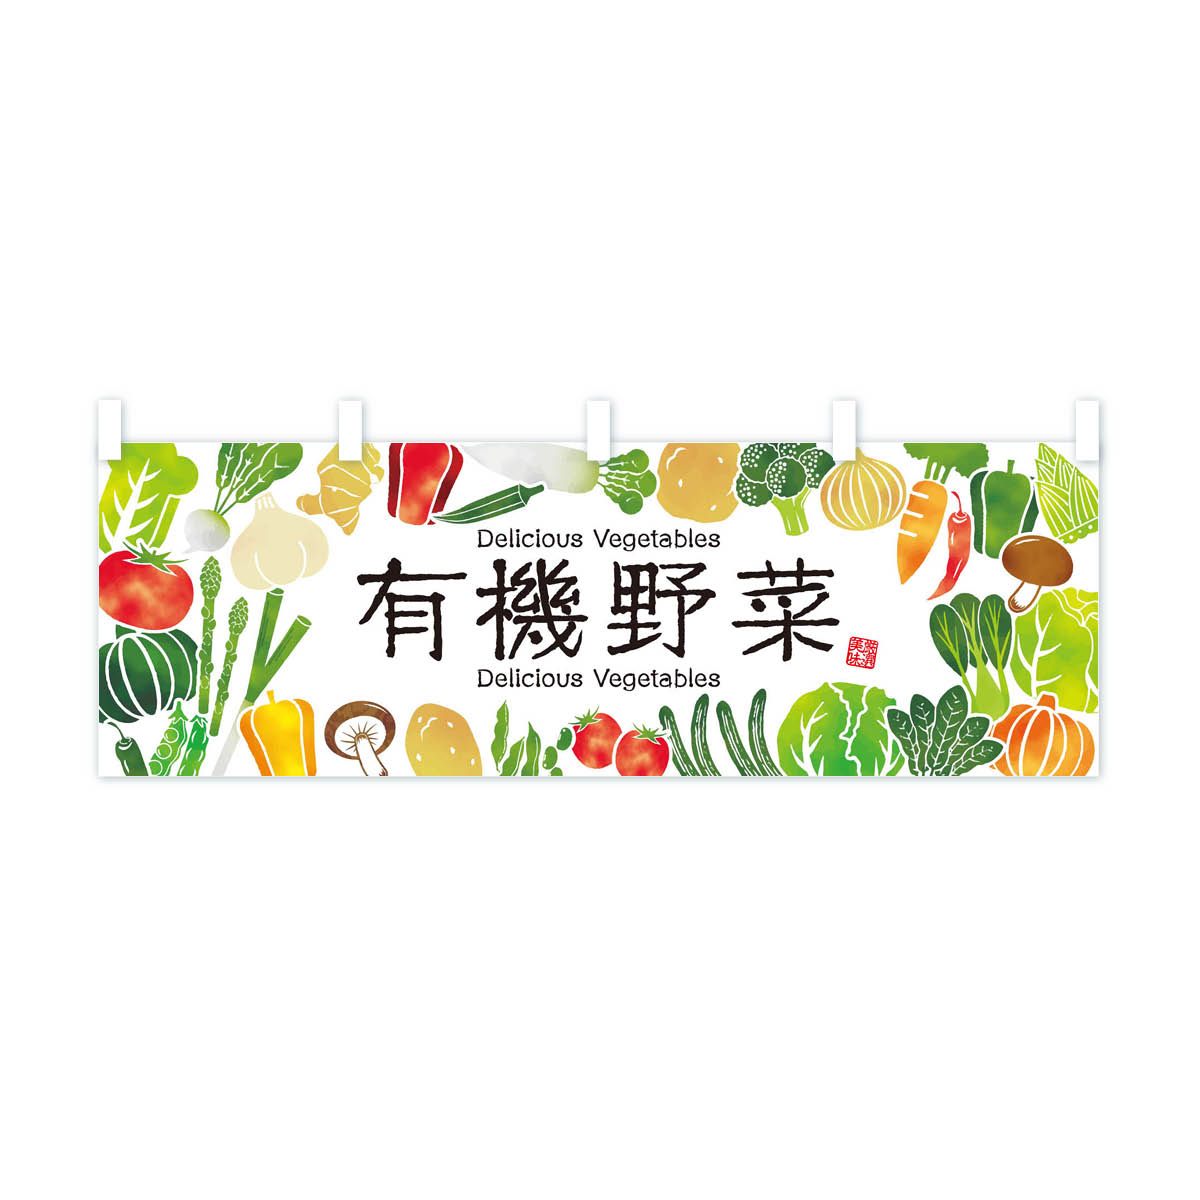 【ネコポス送料360】 横幕 有機野菜・イラスト 3L43 新鮮野菜・直売